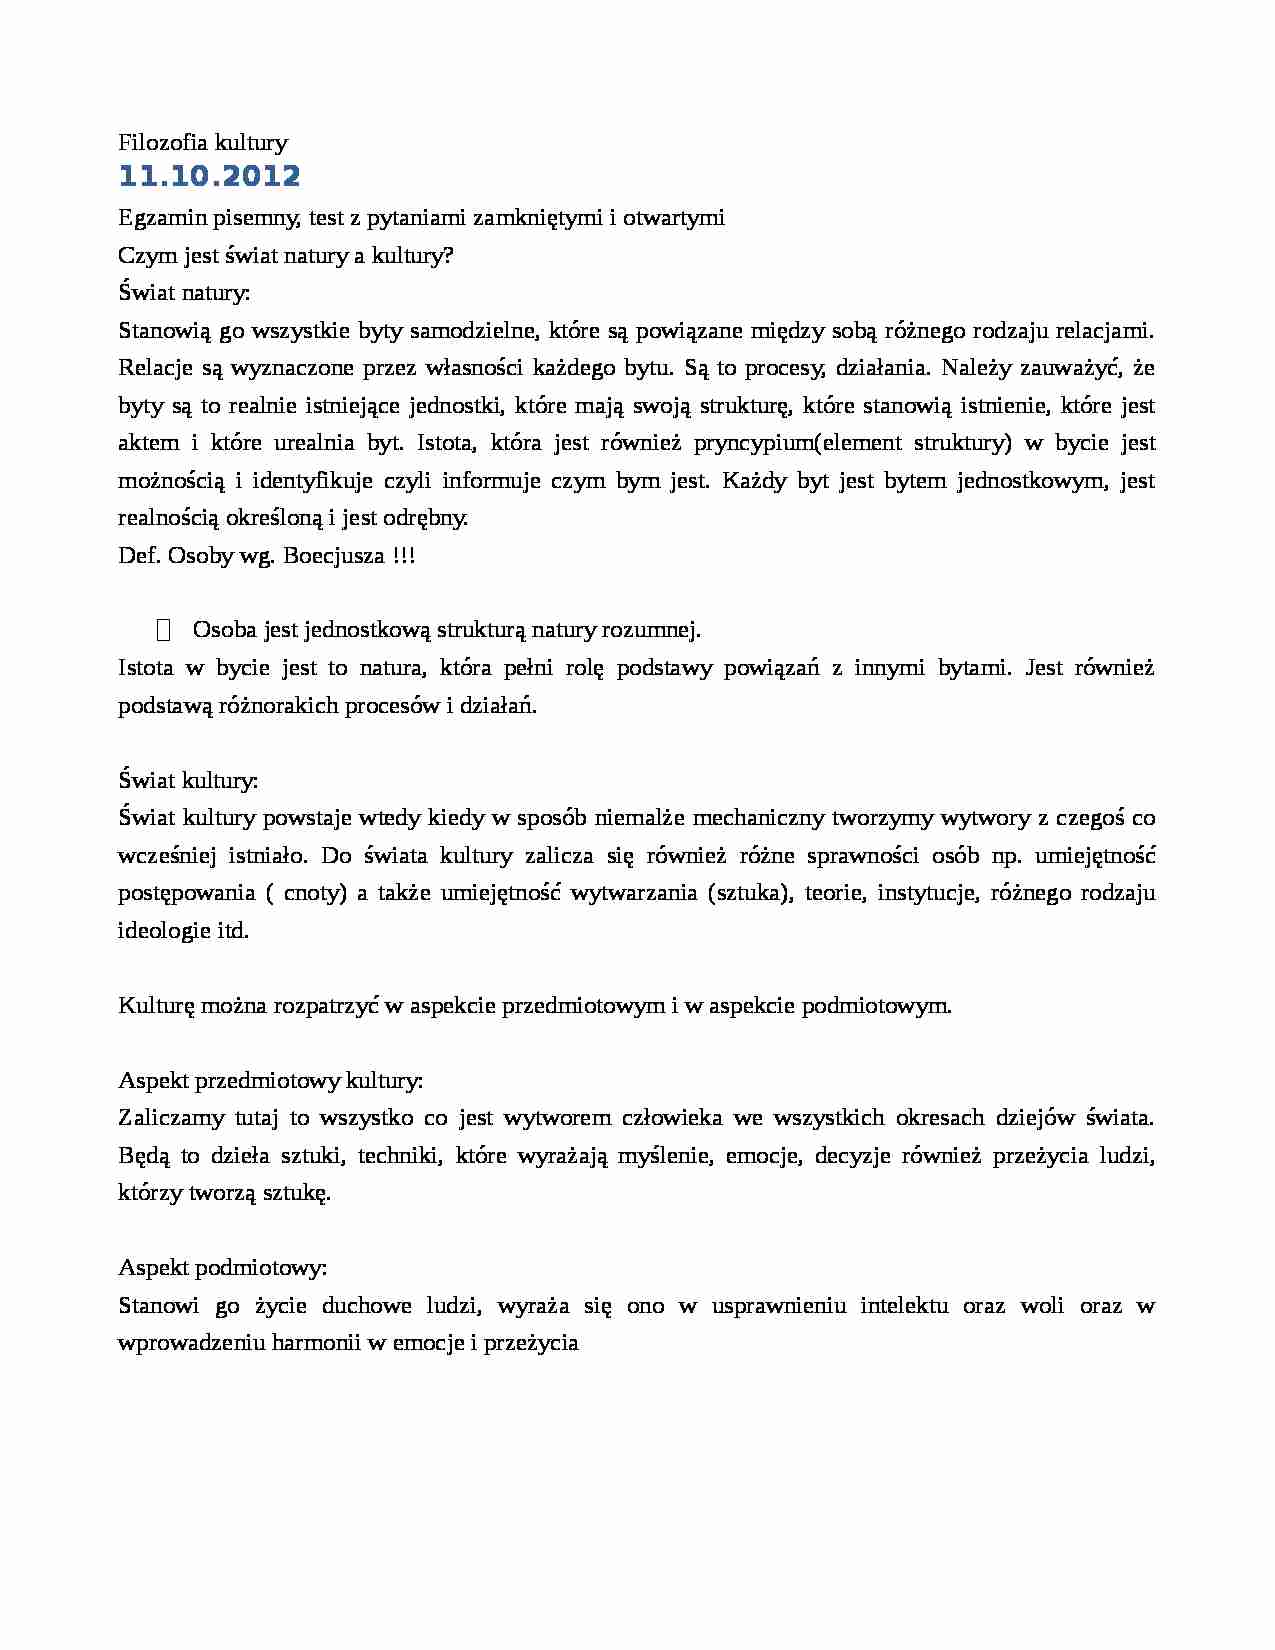 Filozofia kultury - notatki z wykładu 1 z dn. 11.10.2012 r. - strona 1